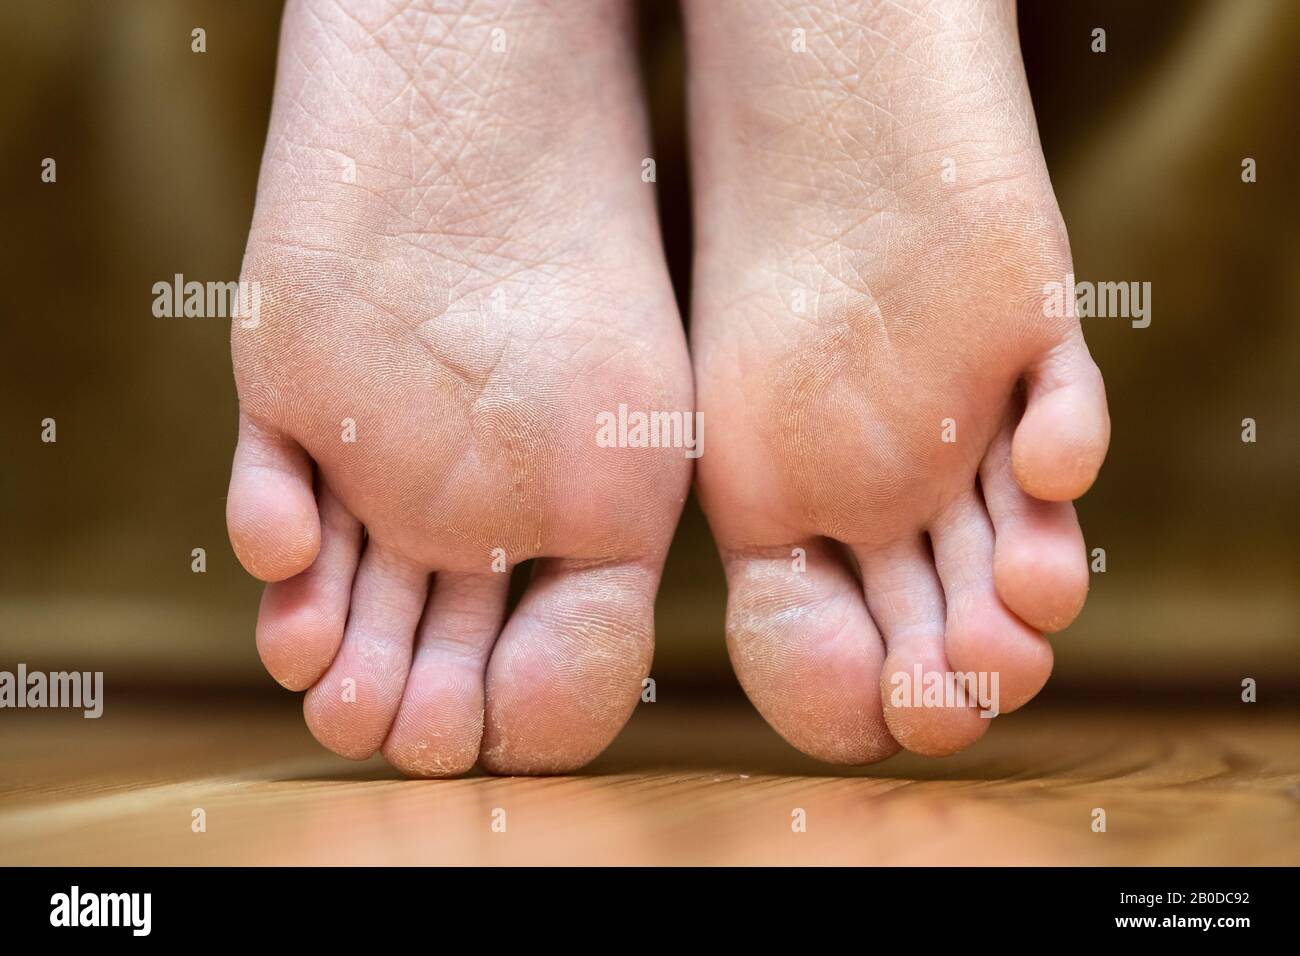 dry cracked skin on bottom of feet